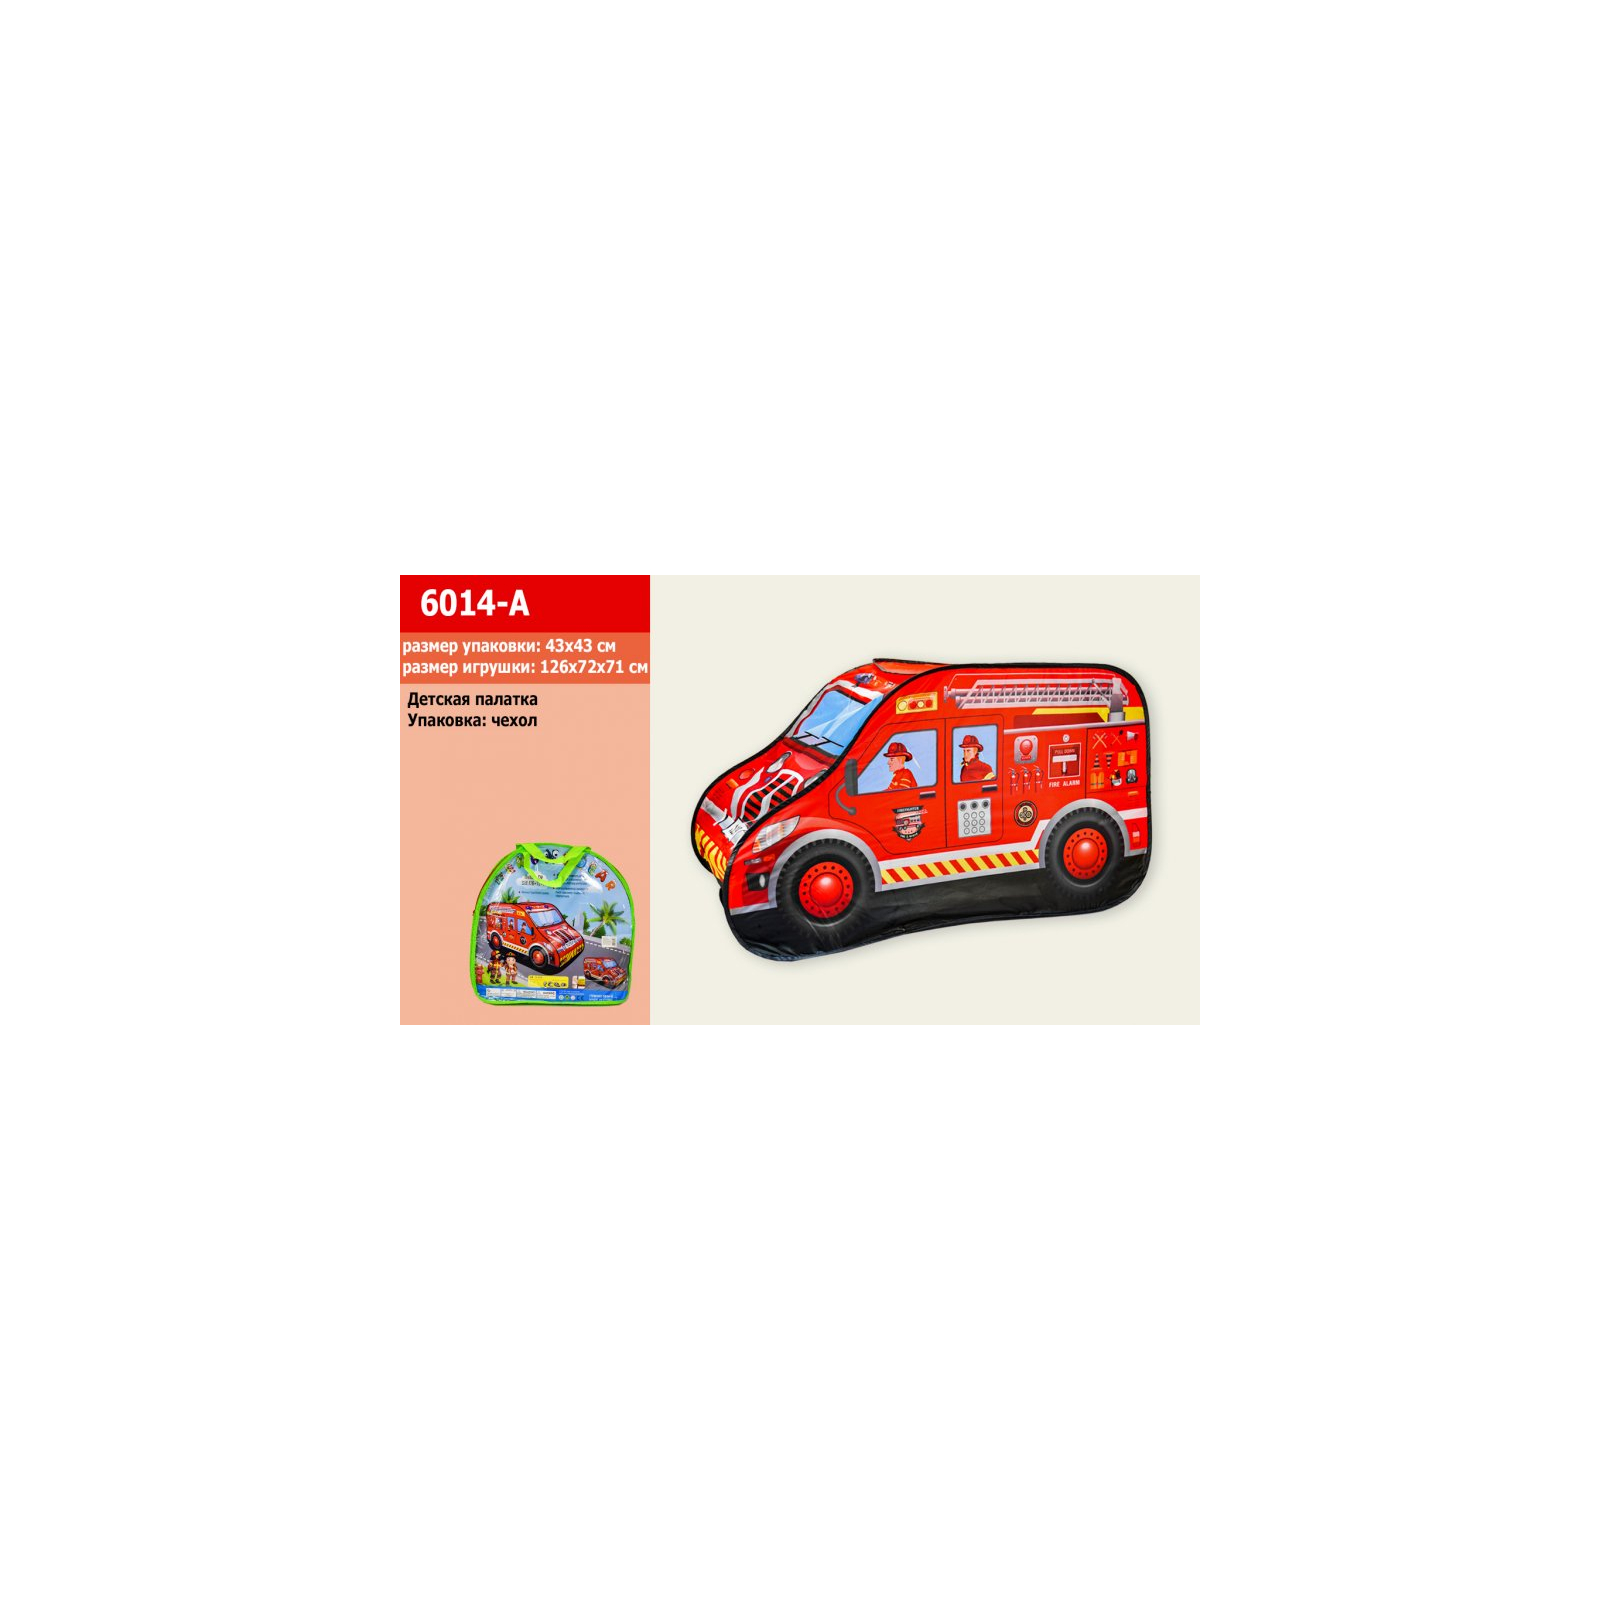 Игровая палатка A-Toys Пожарная машина 126*72*71 (6014-A)